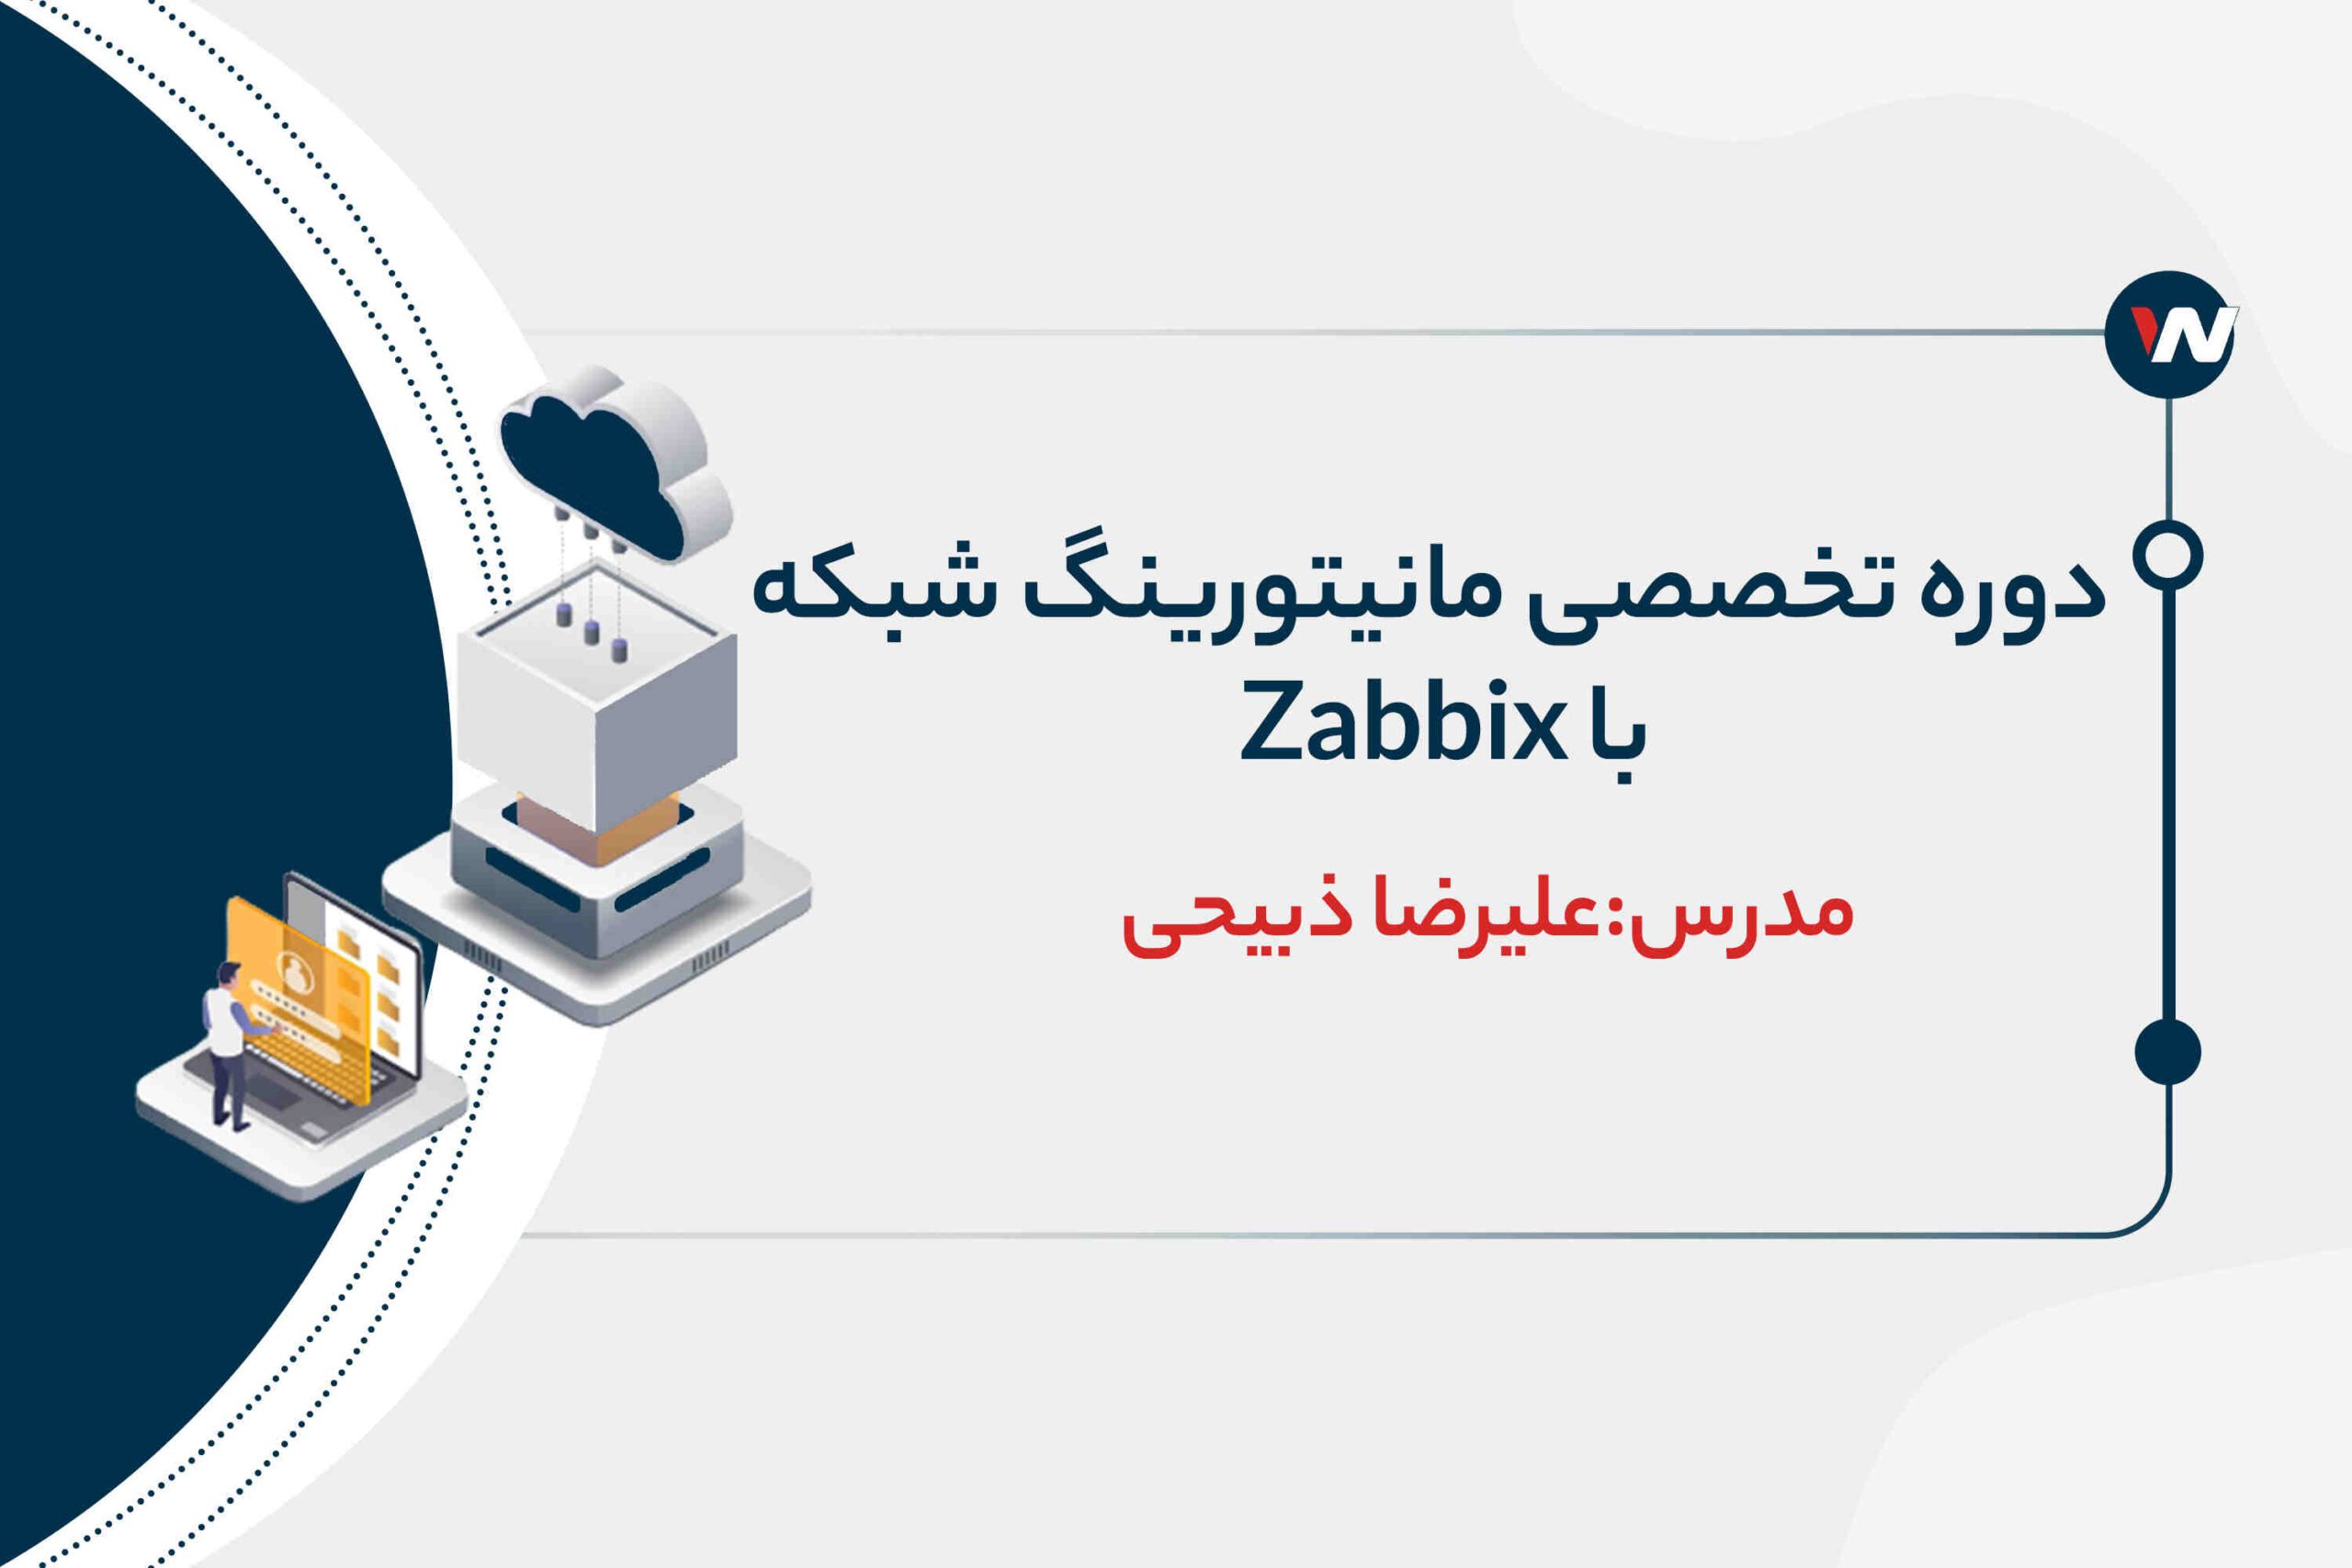 دوره تخصصی مانیتورینگ شبکه با زبیکس Zabbix